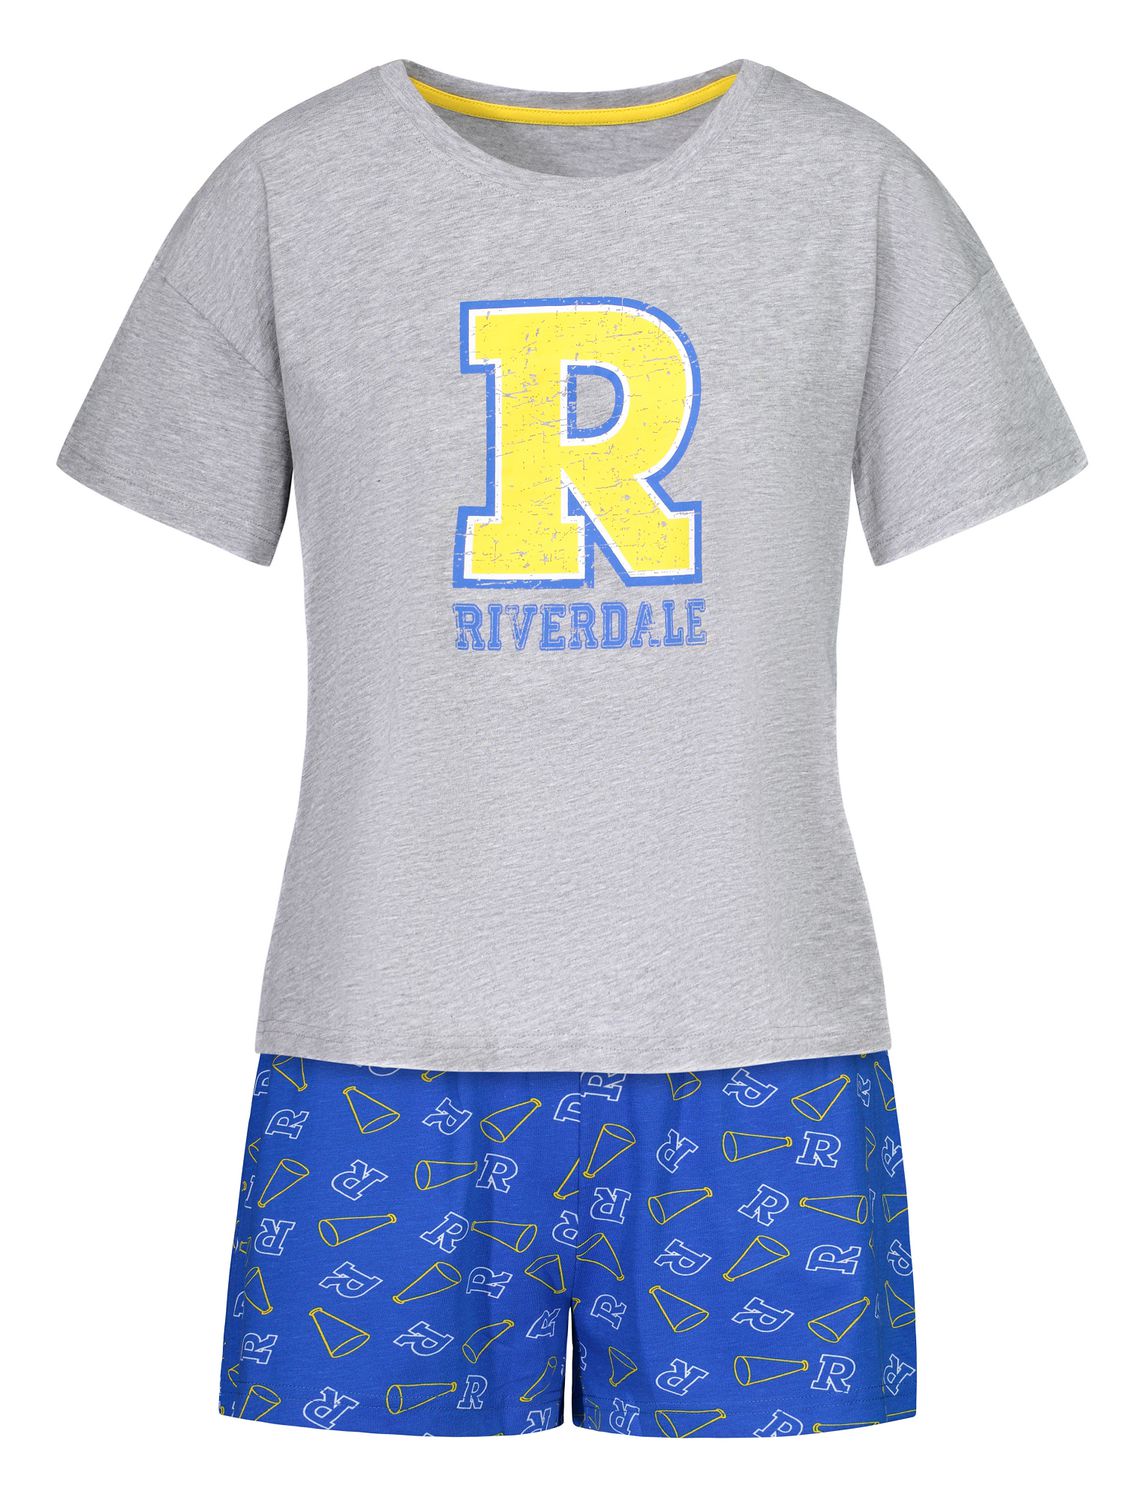 Riverdale two piece pyjama set for ladies | Walmart Canada